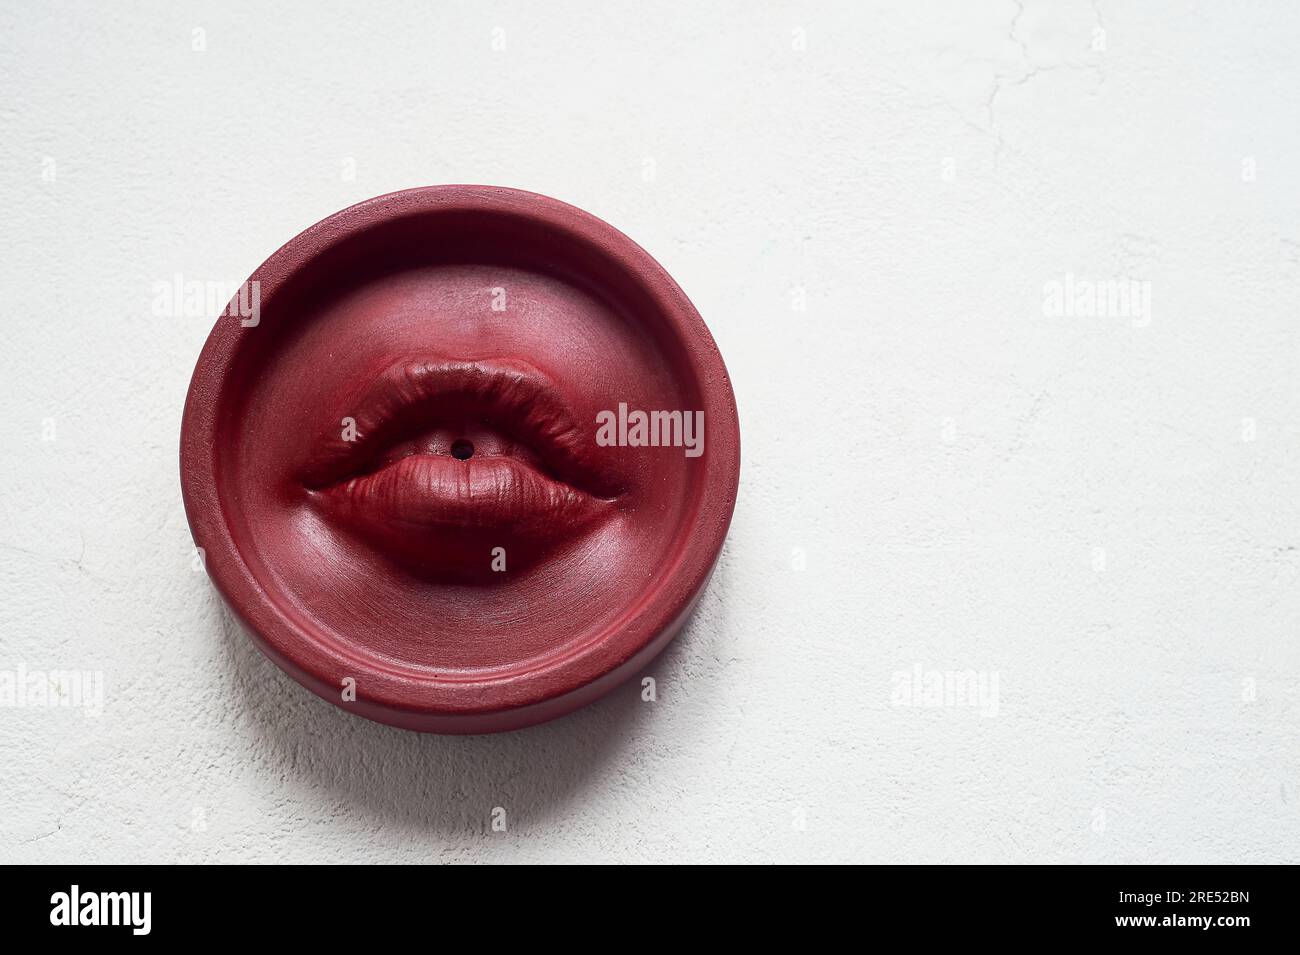 Räucherstäbchen, rote Lippen. Runde Form auf weißem Hintergrund. Esoterismus, Meditation. Stockfoto